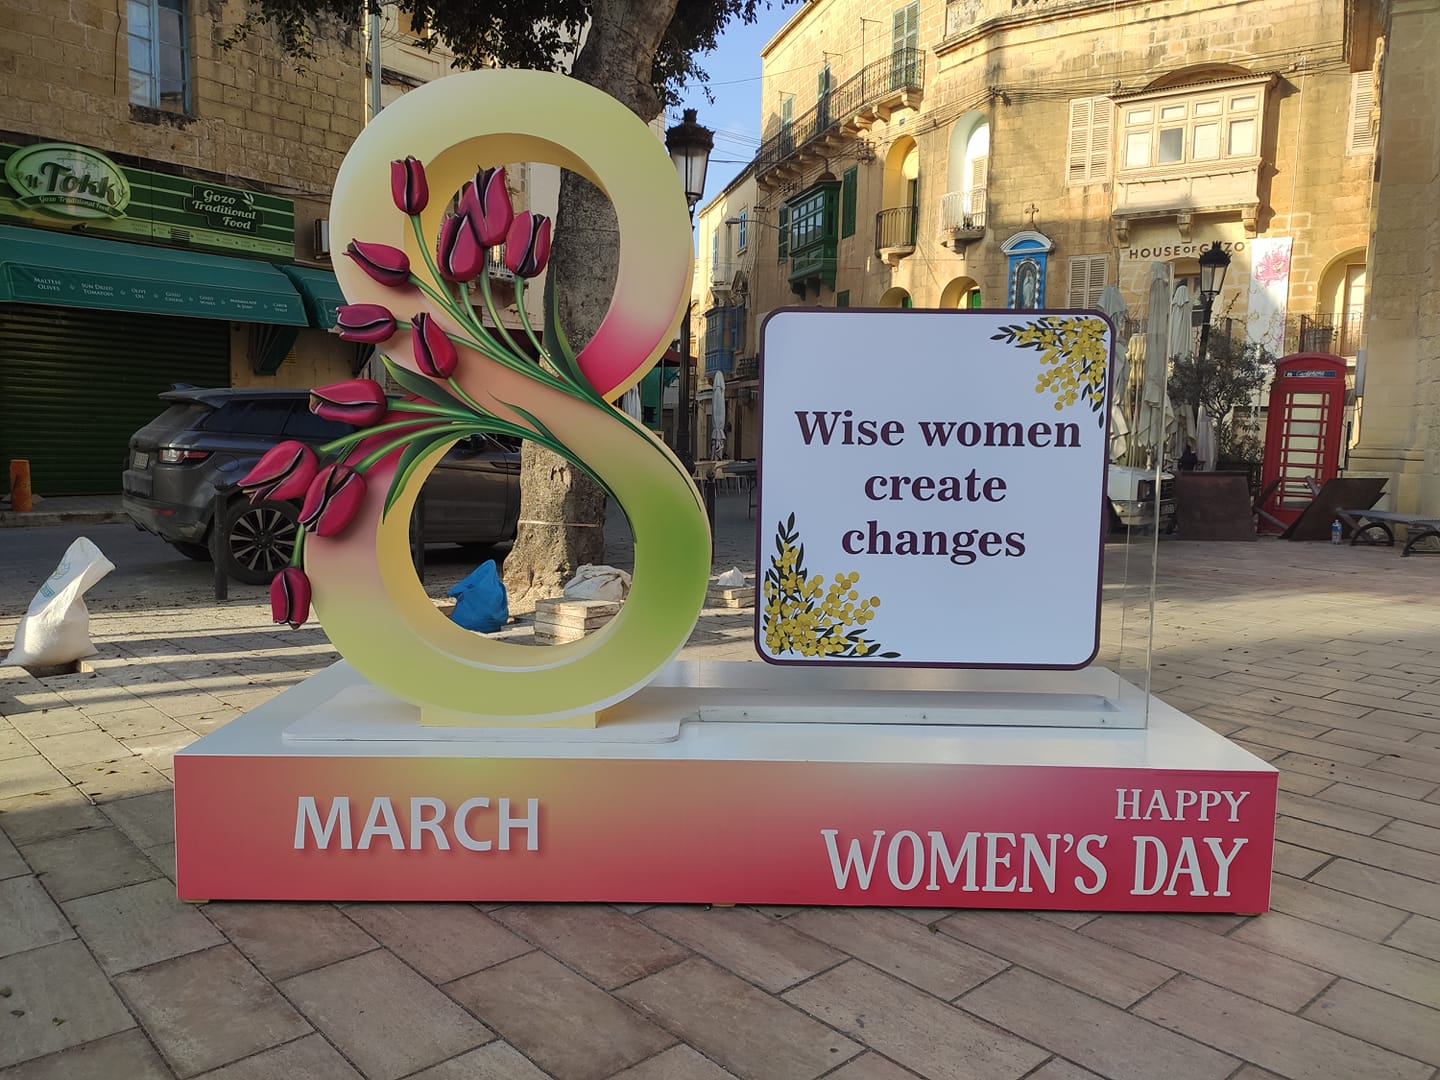 Women’s Day